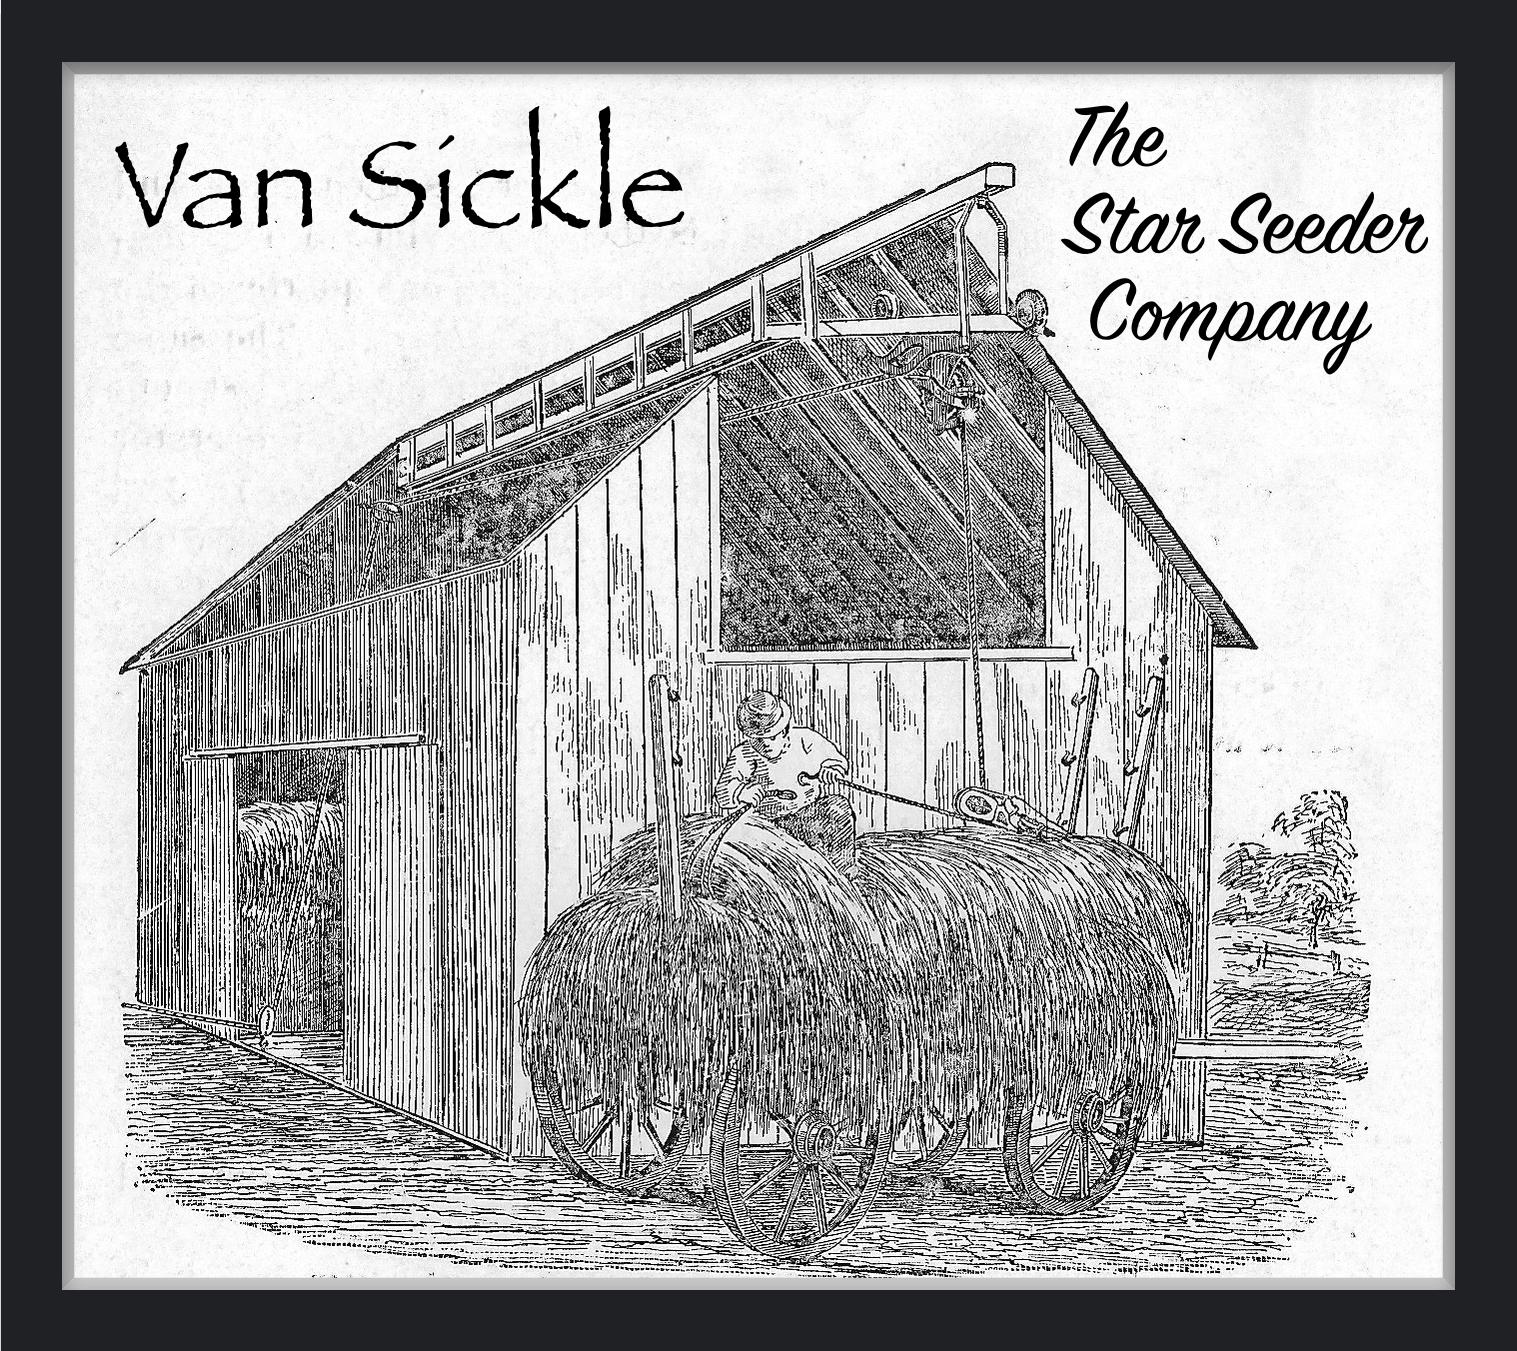 Van Sickle